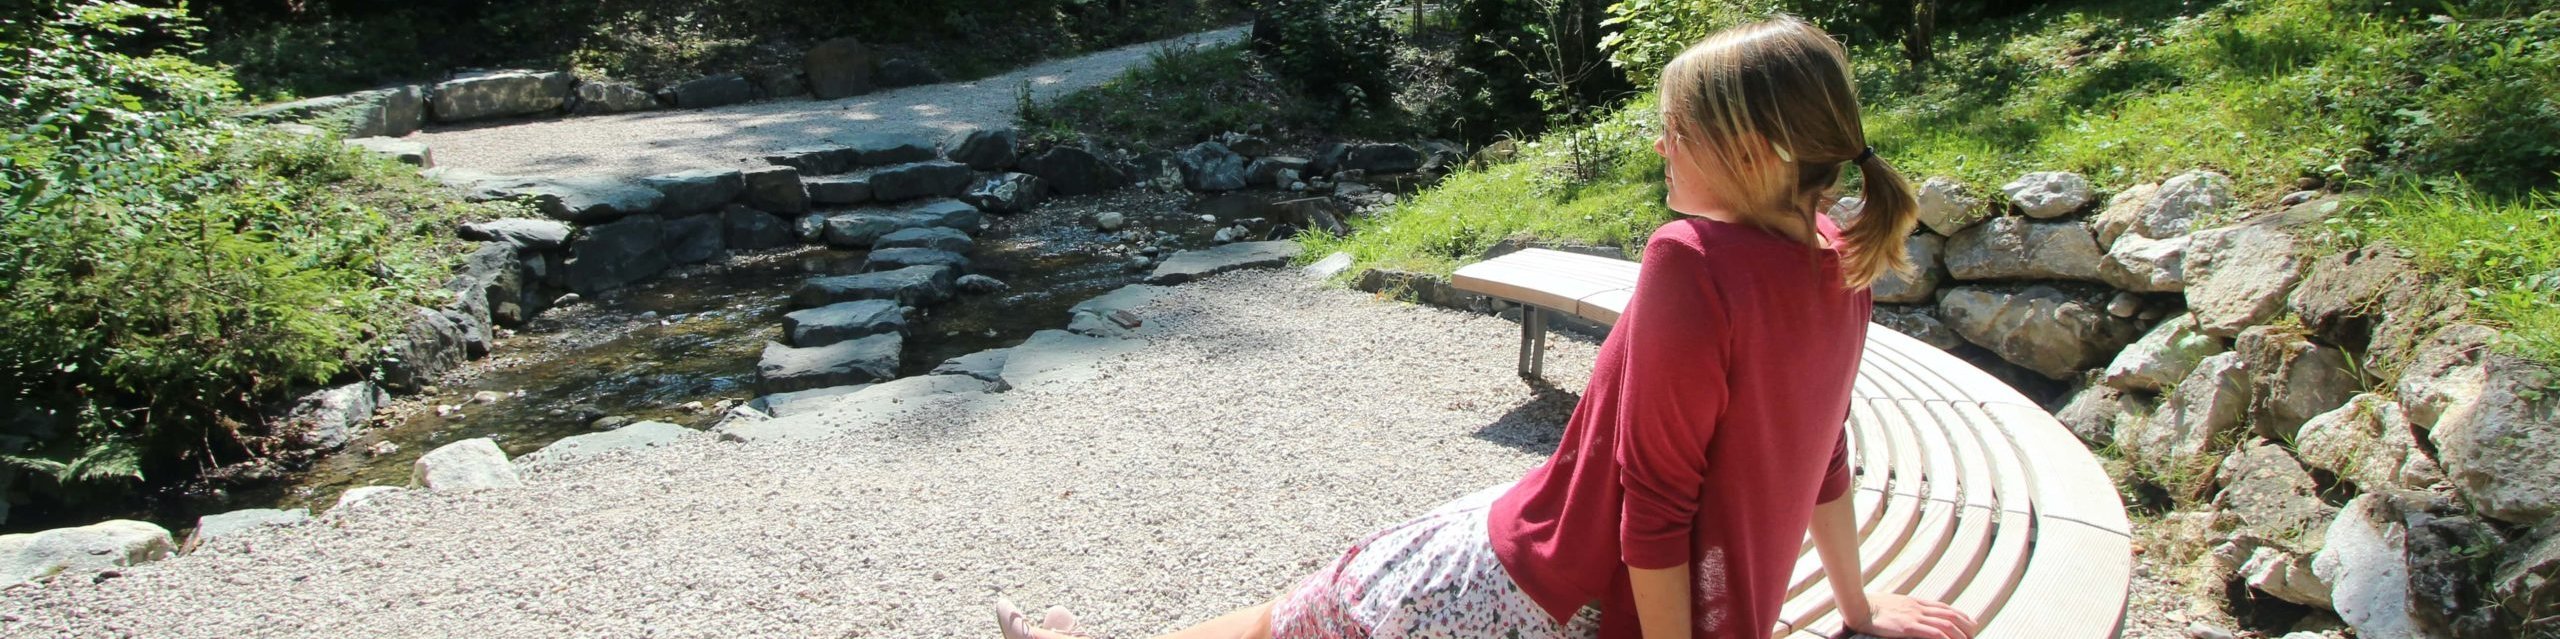 Frau beim genießen der warmen Sonne auf einer Bank am Natur-Kneipp-Becken